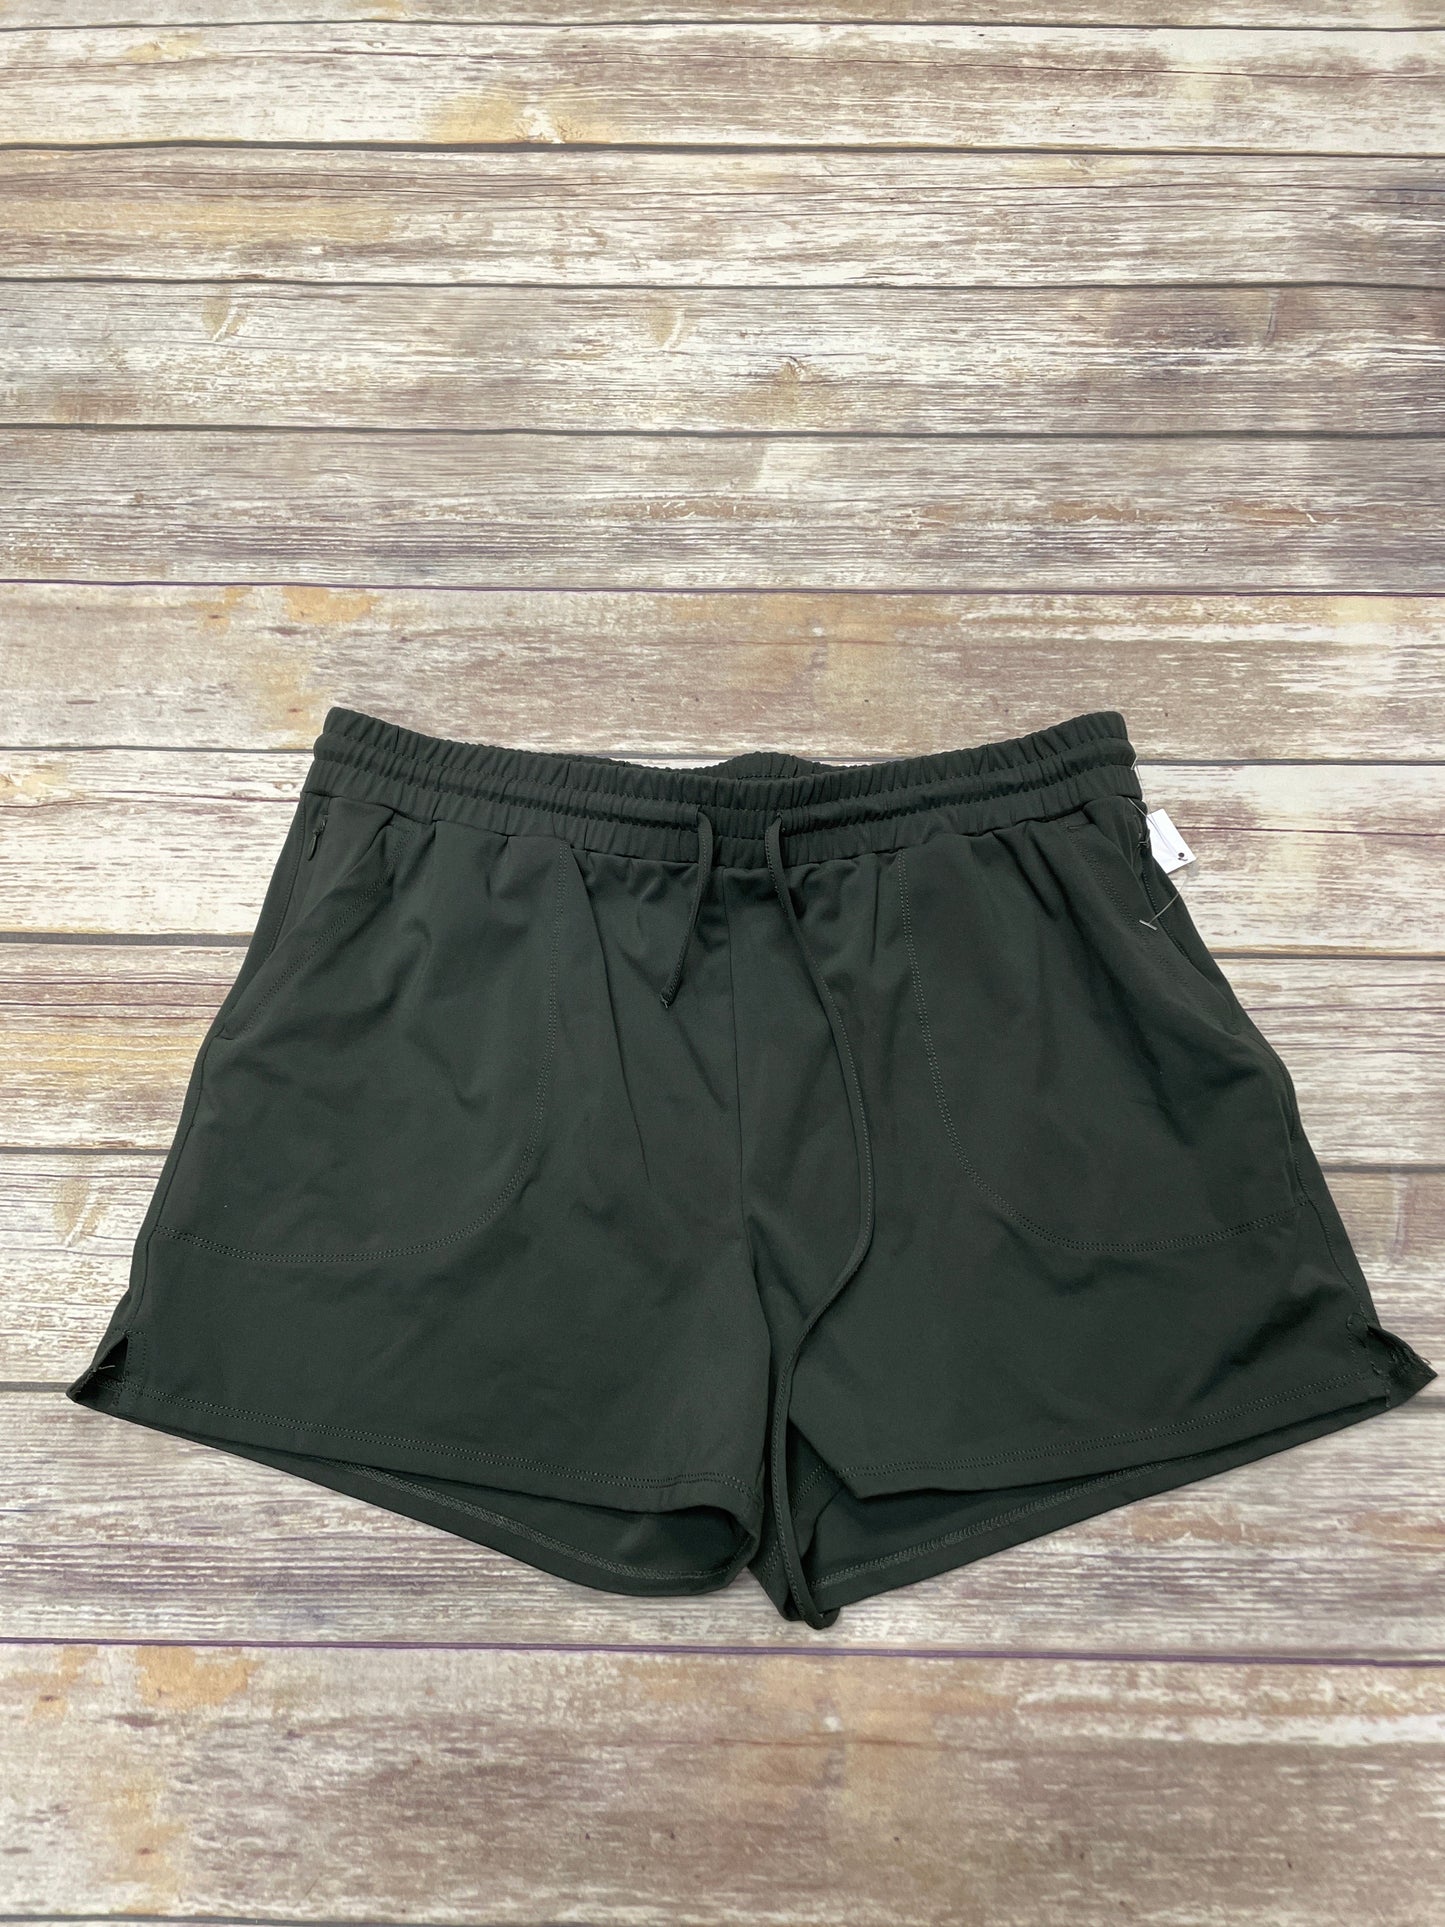 Green Shorts Cynthia Rowley, Size Xl